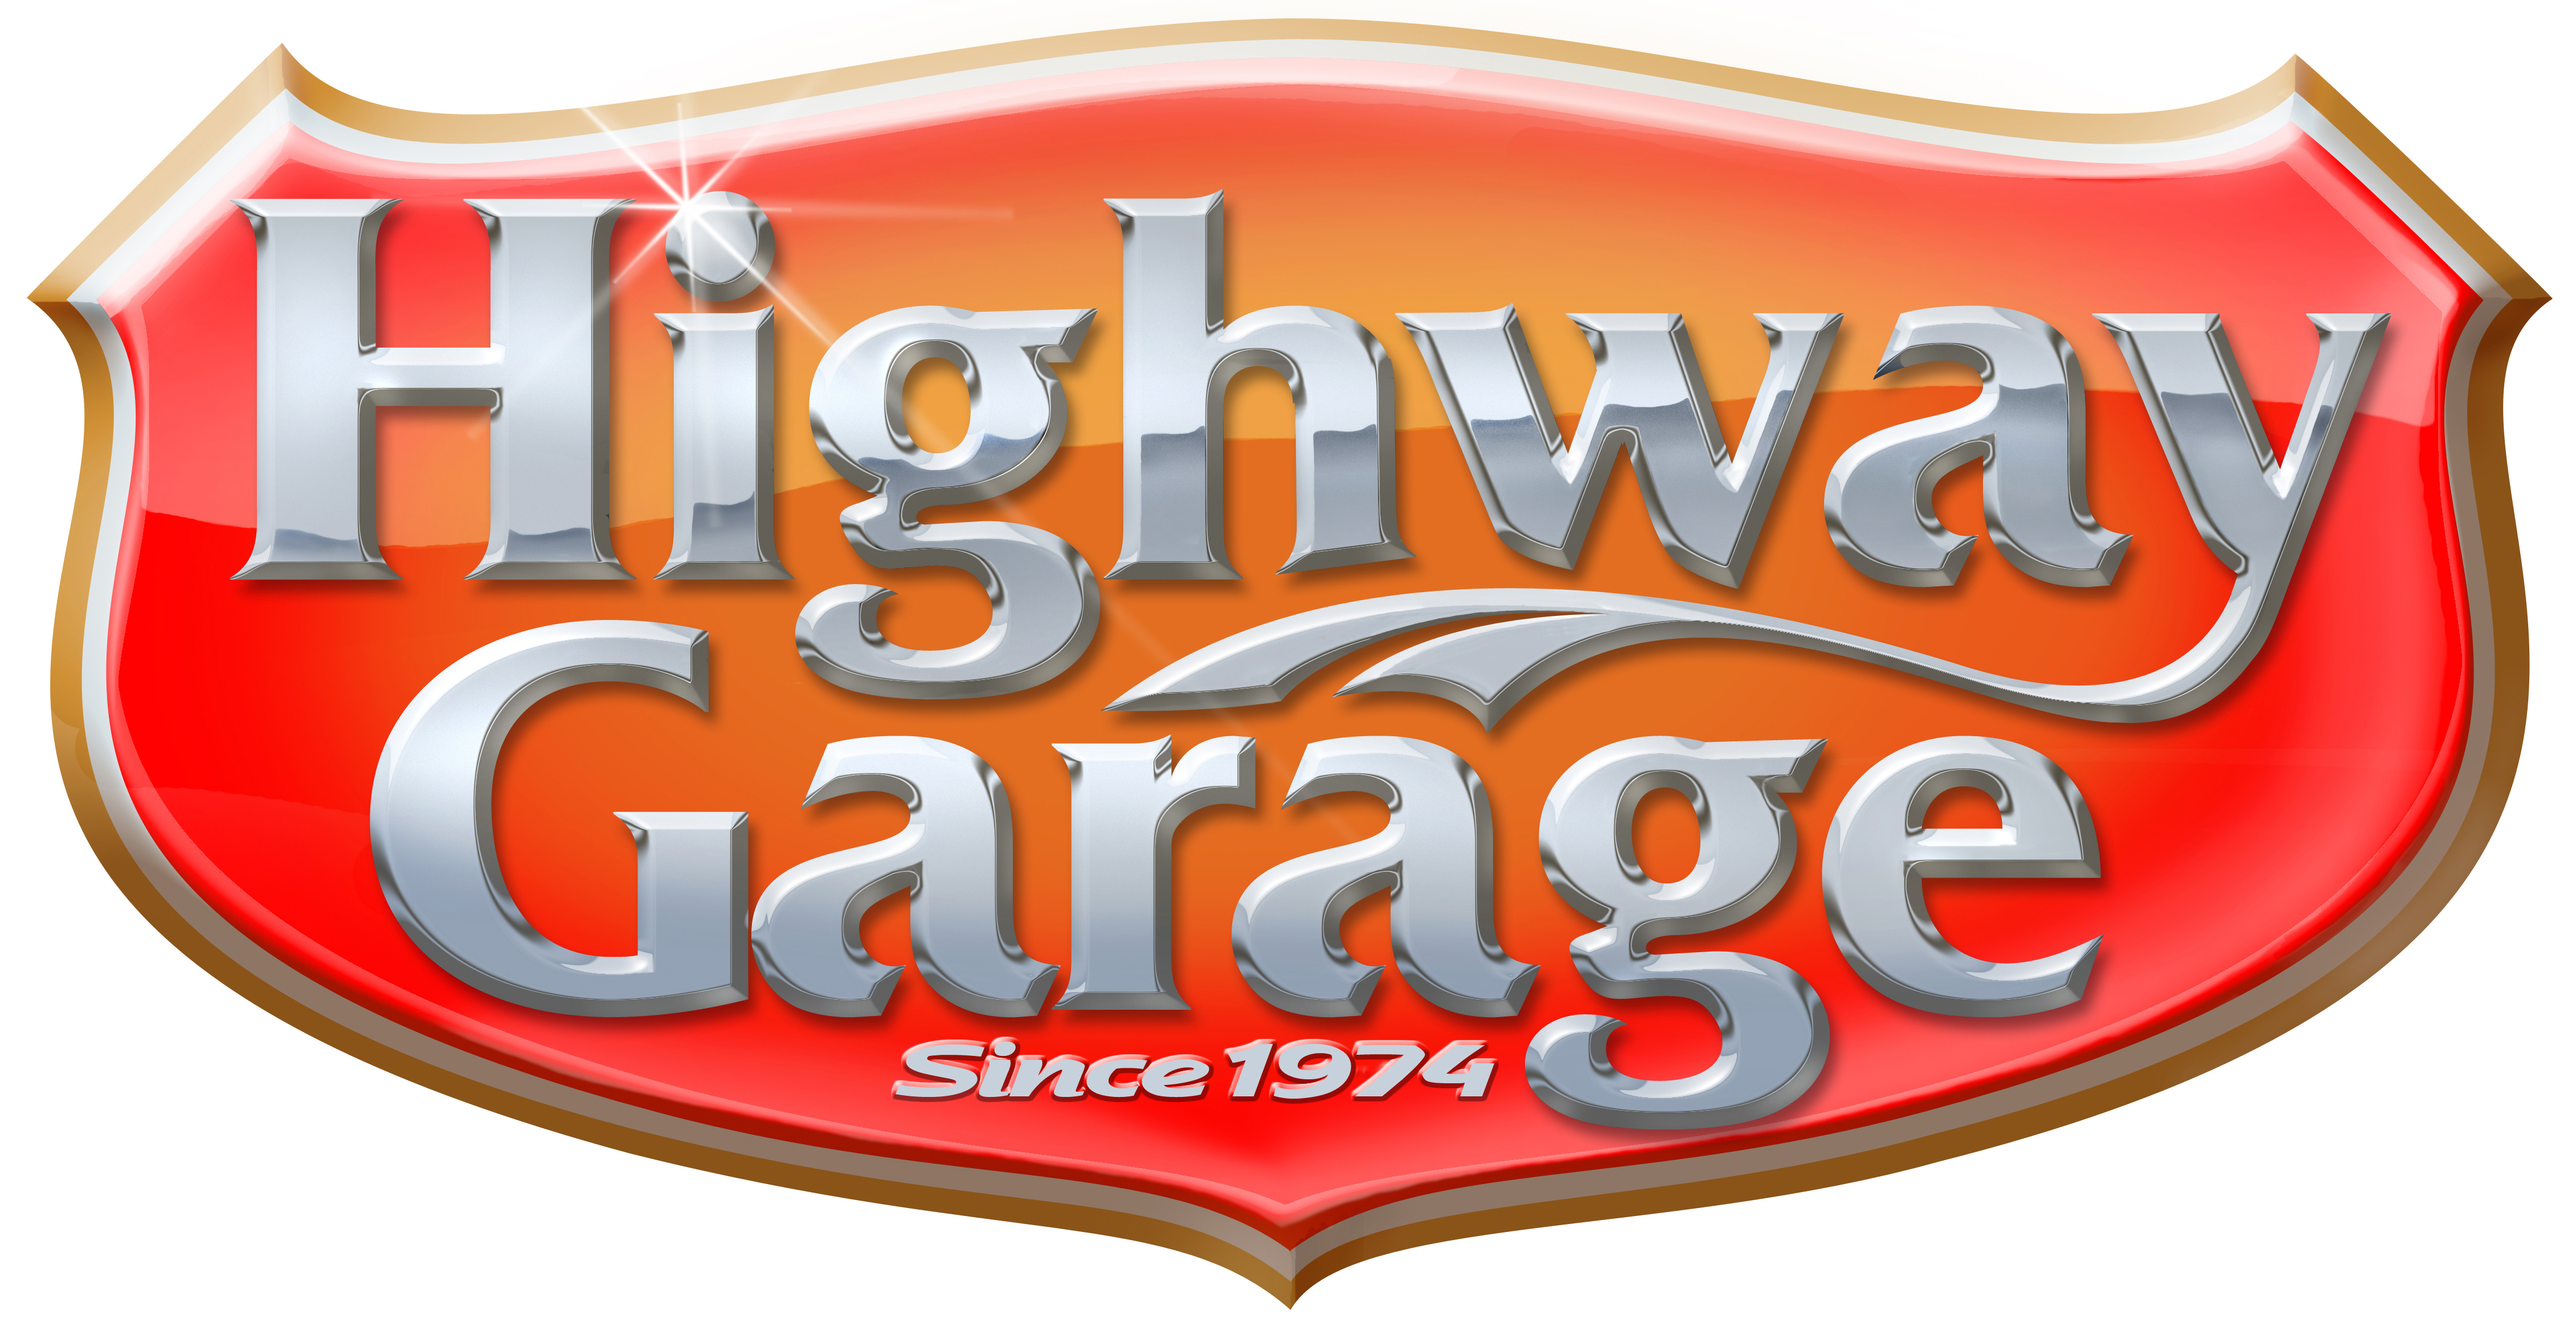 Highway Garage